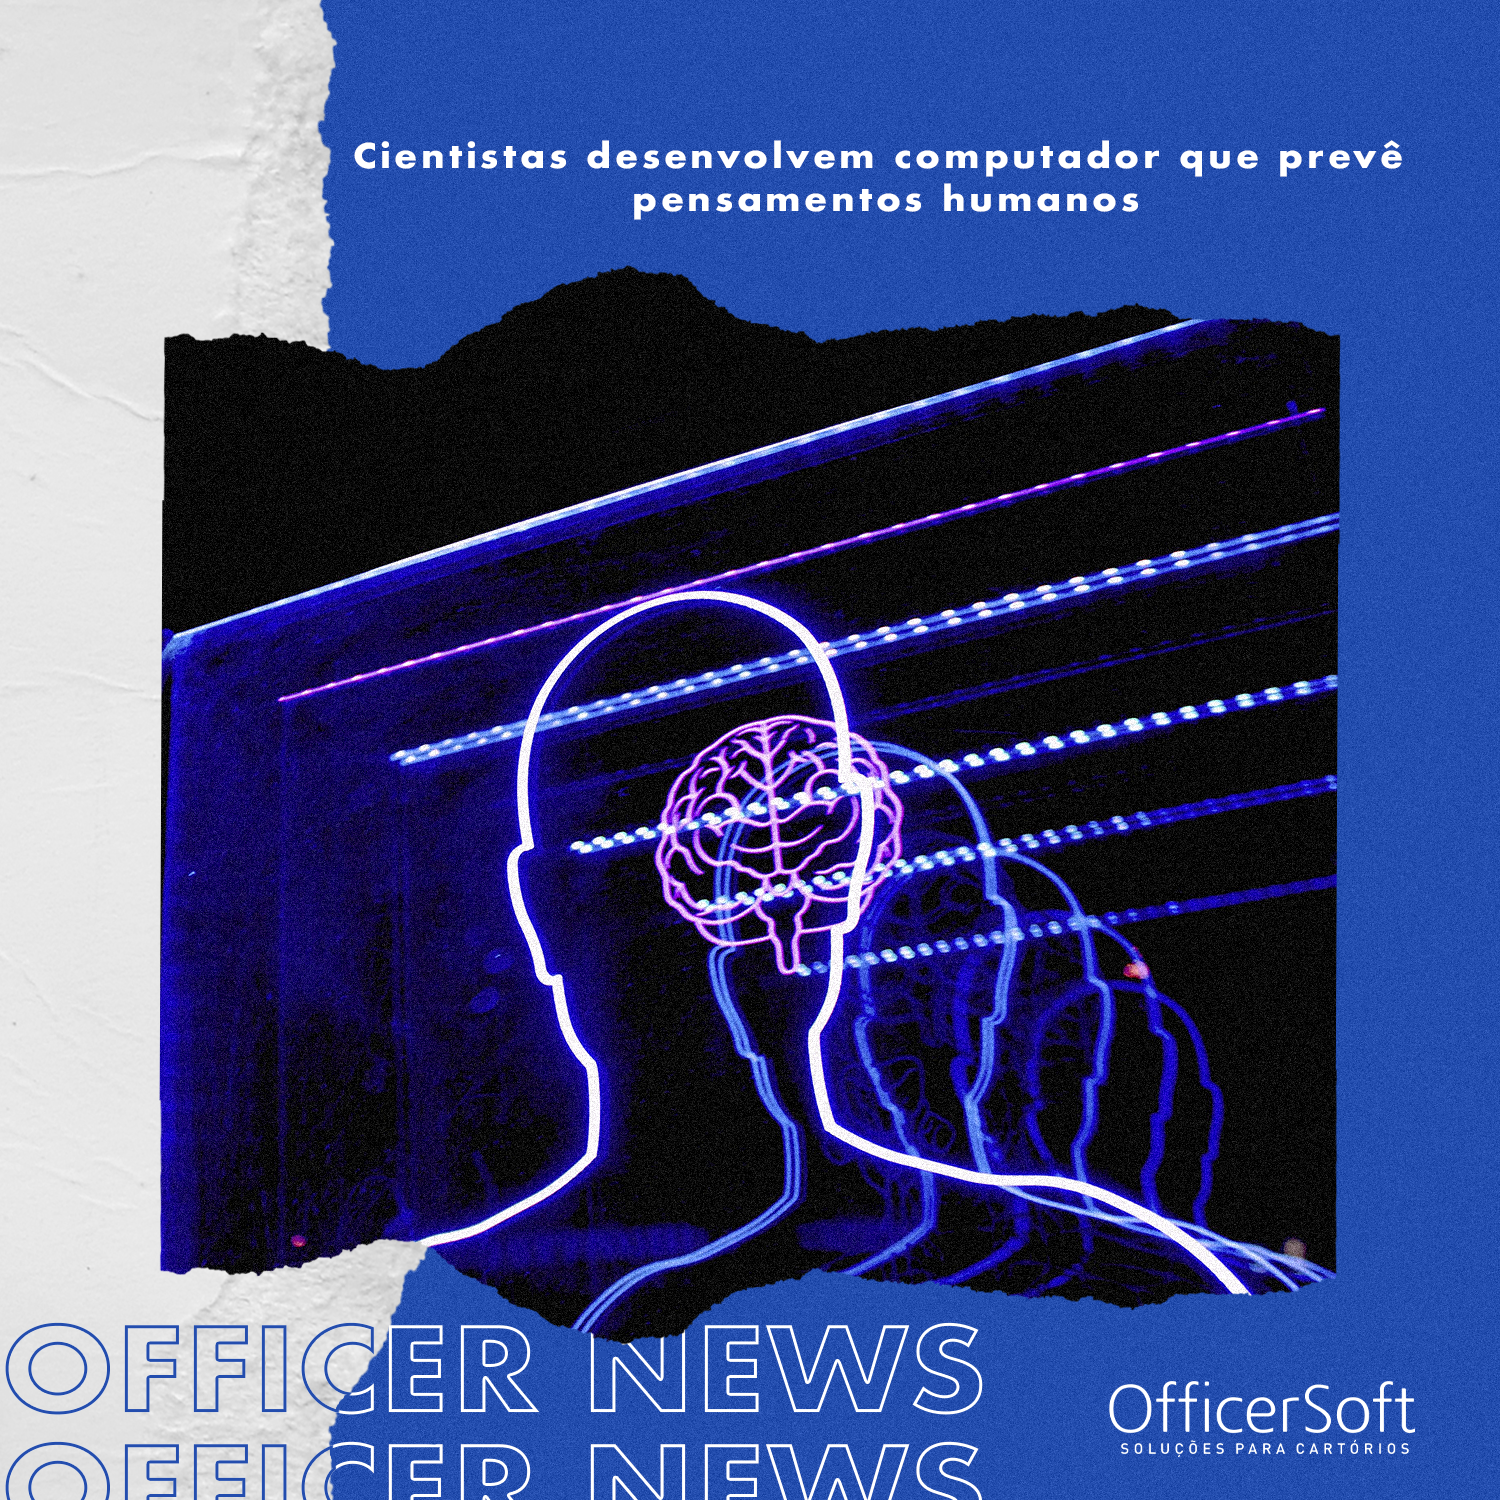 Officer News – Cientistas Desenvolvem Computador que Prevê Pensamentos Humanos